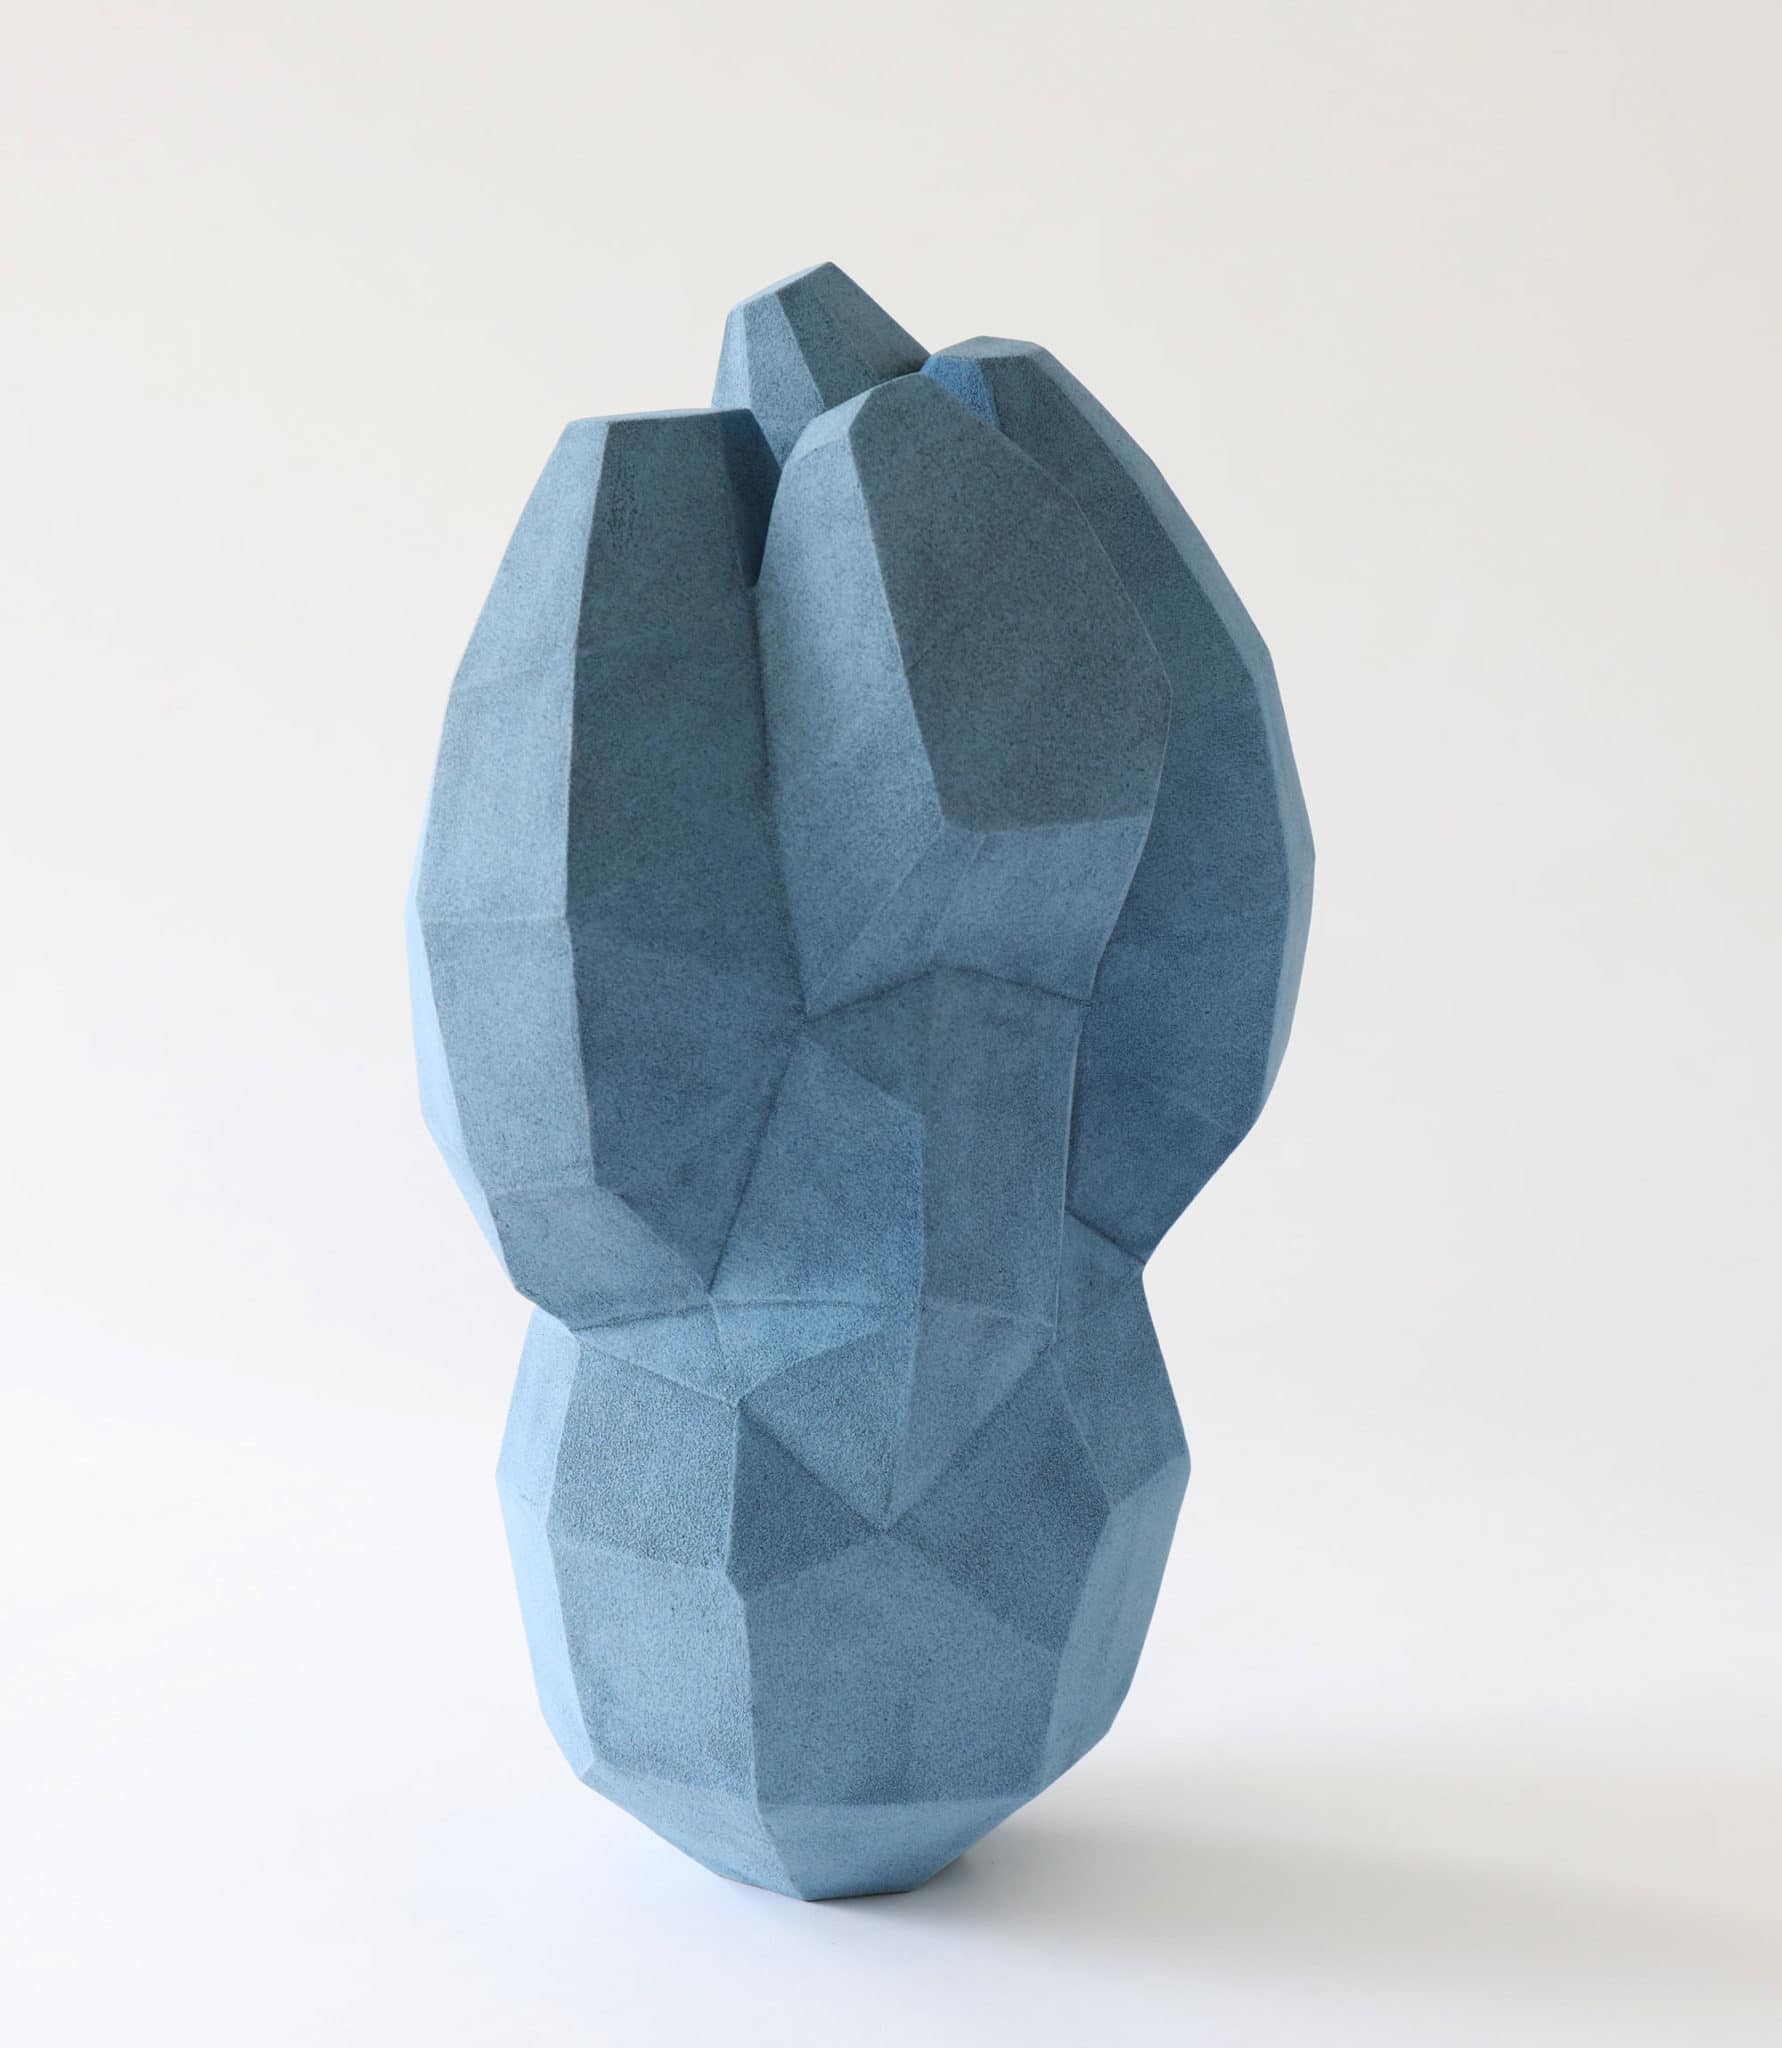 Faceted ceramic sculptures by Turi Heisselberg Pedersen